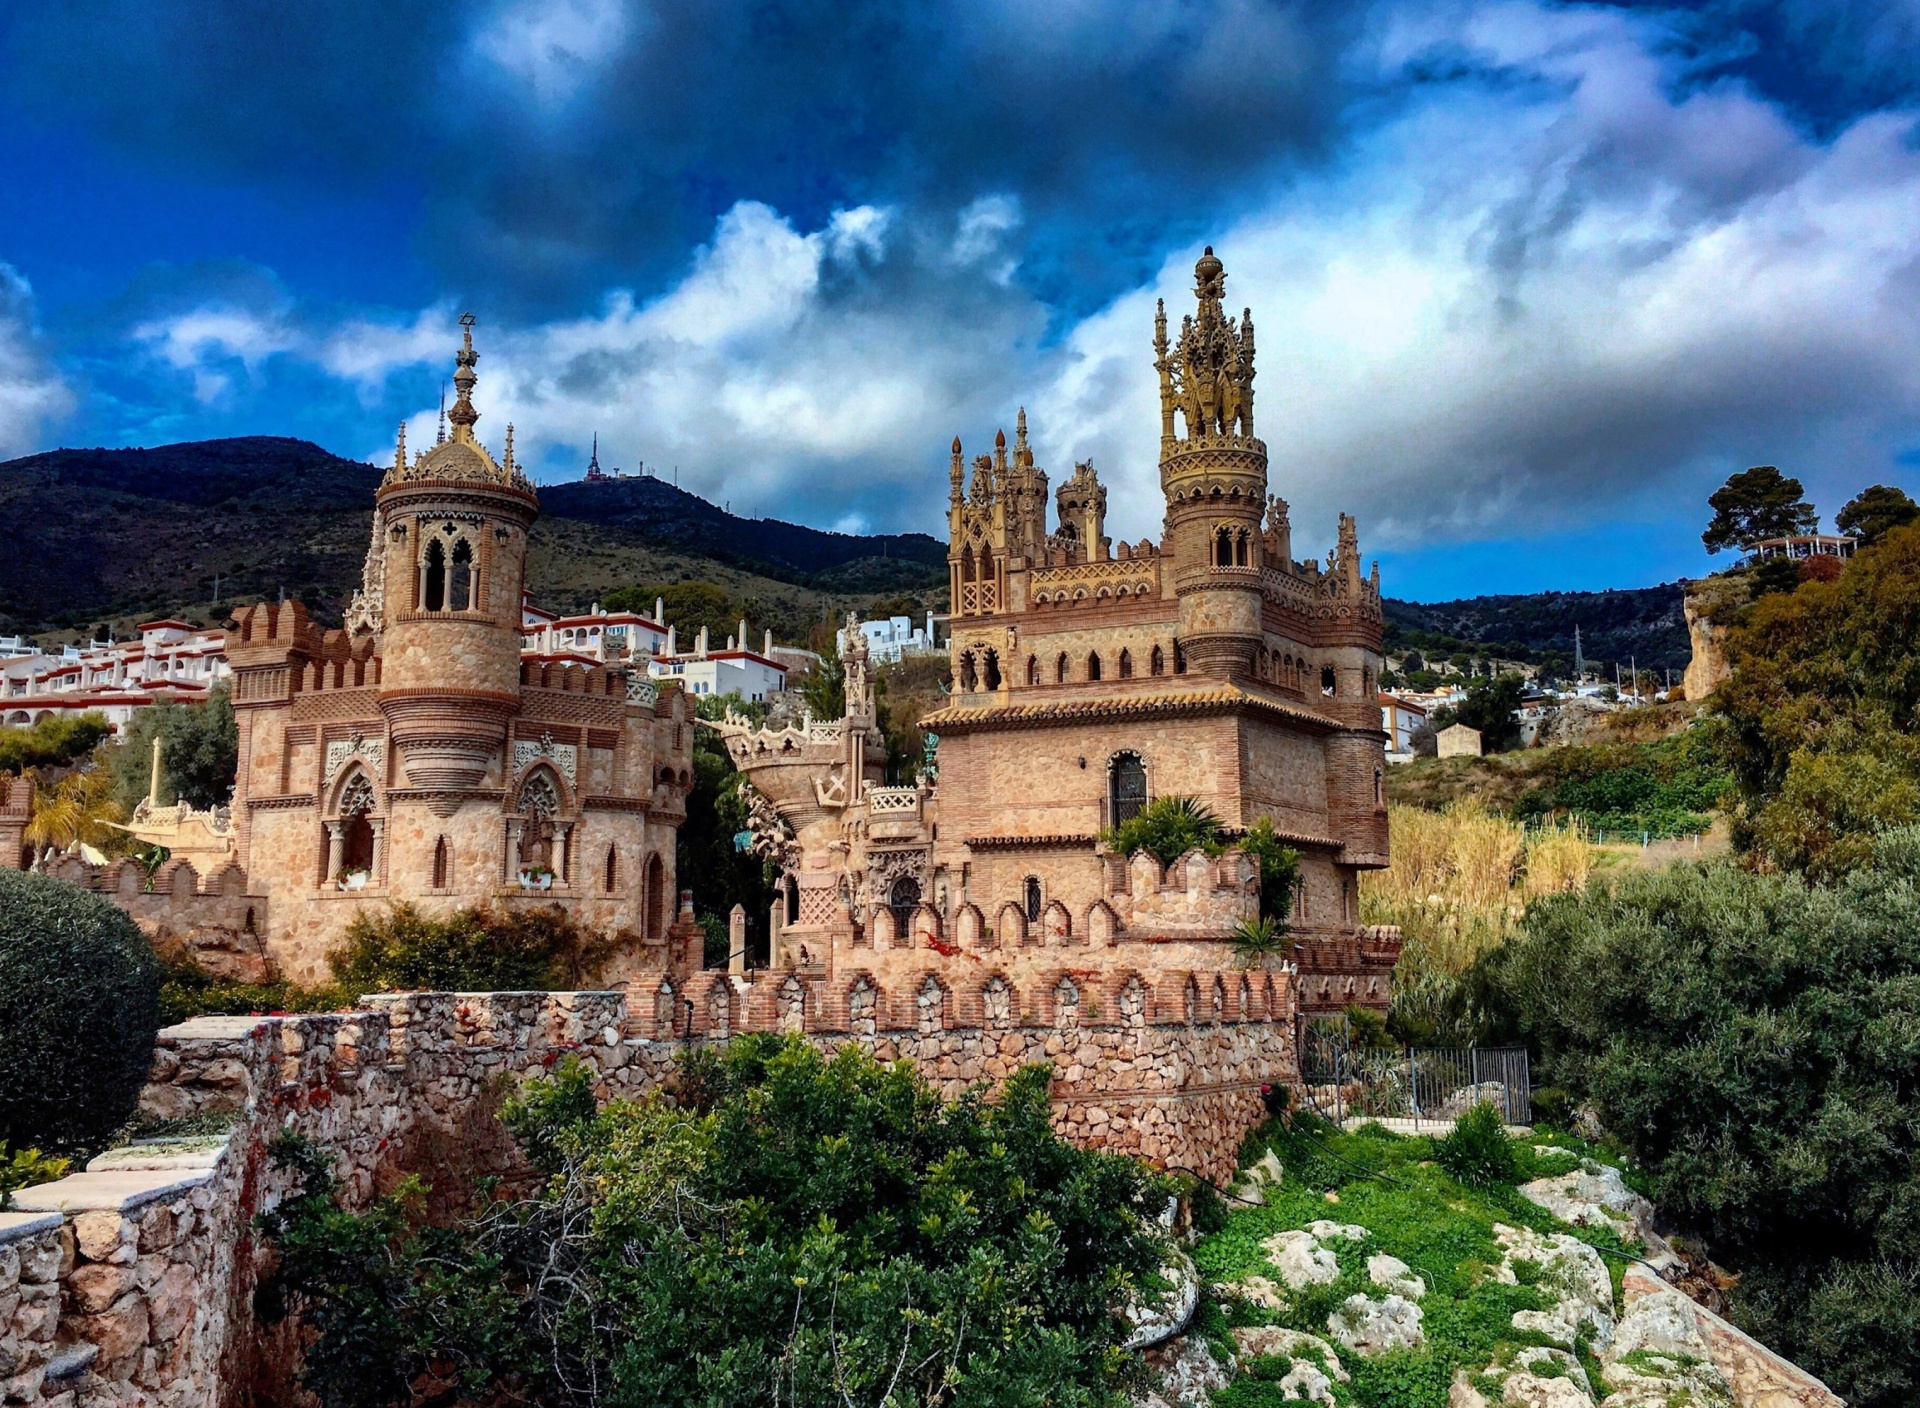 Castillo de Colomares in Spain Benalmadena screenshot #1 1920x1408